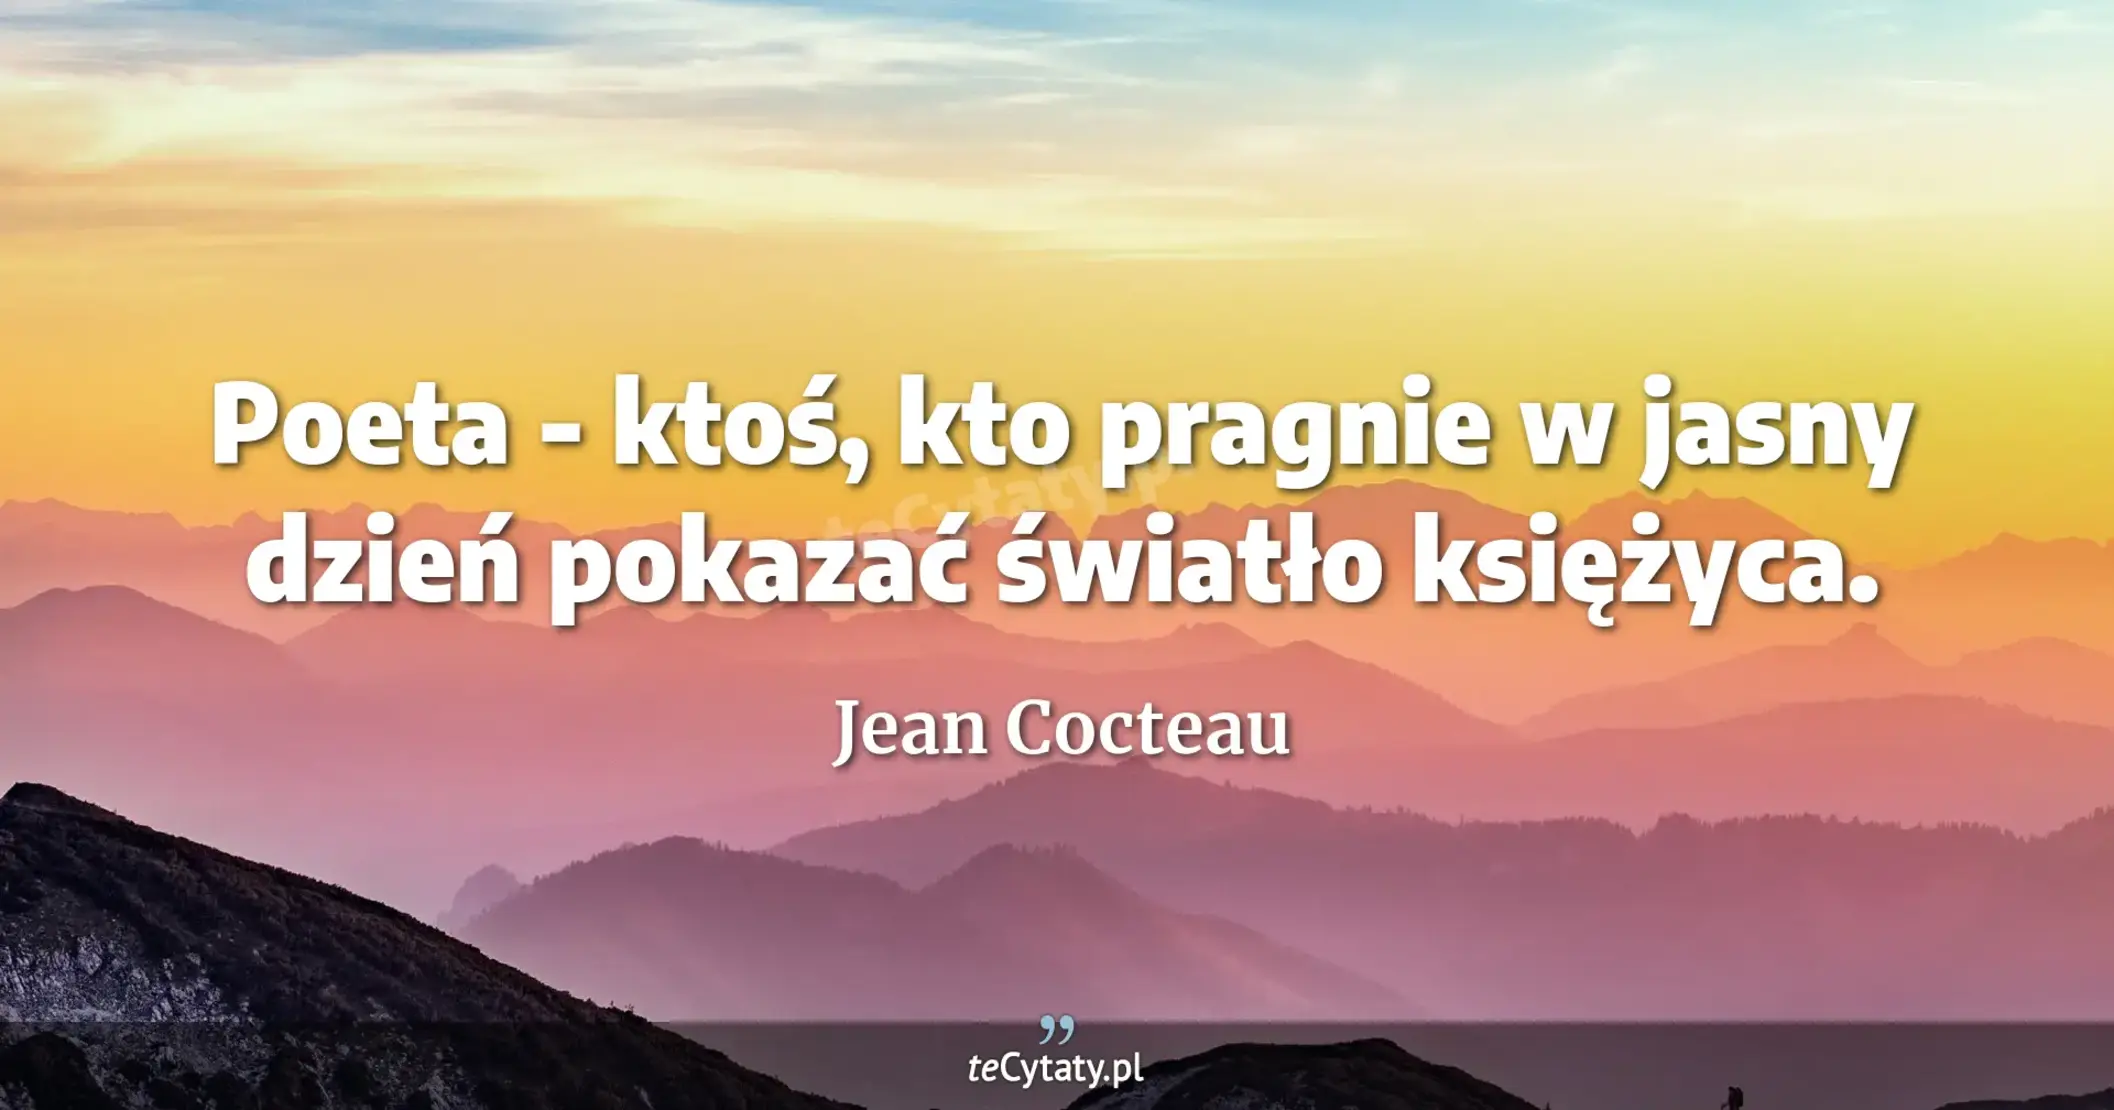 Poeta - ktoś, kto pragnie w jasny dzień pokazać światło księżyca. - Jean Cocteau